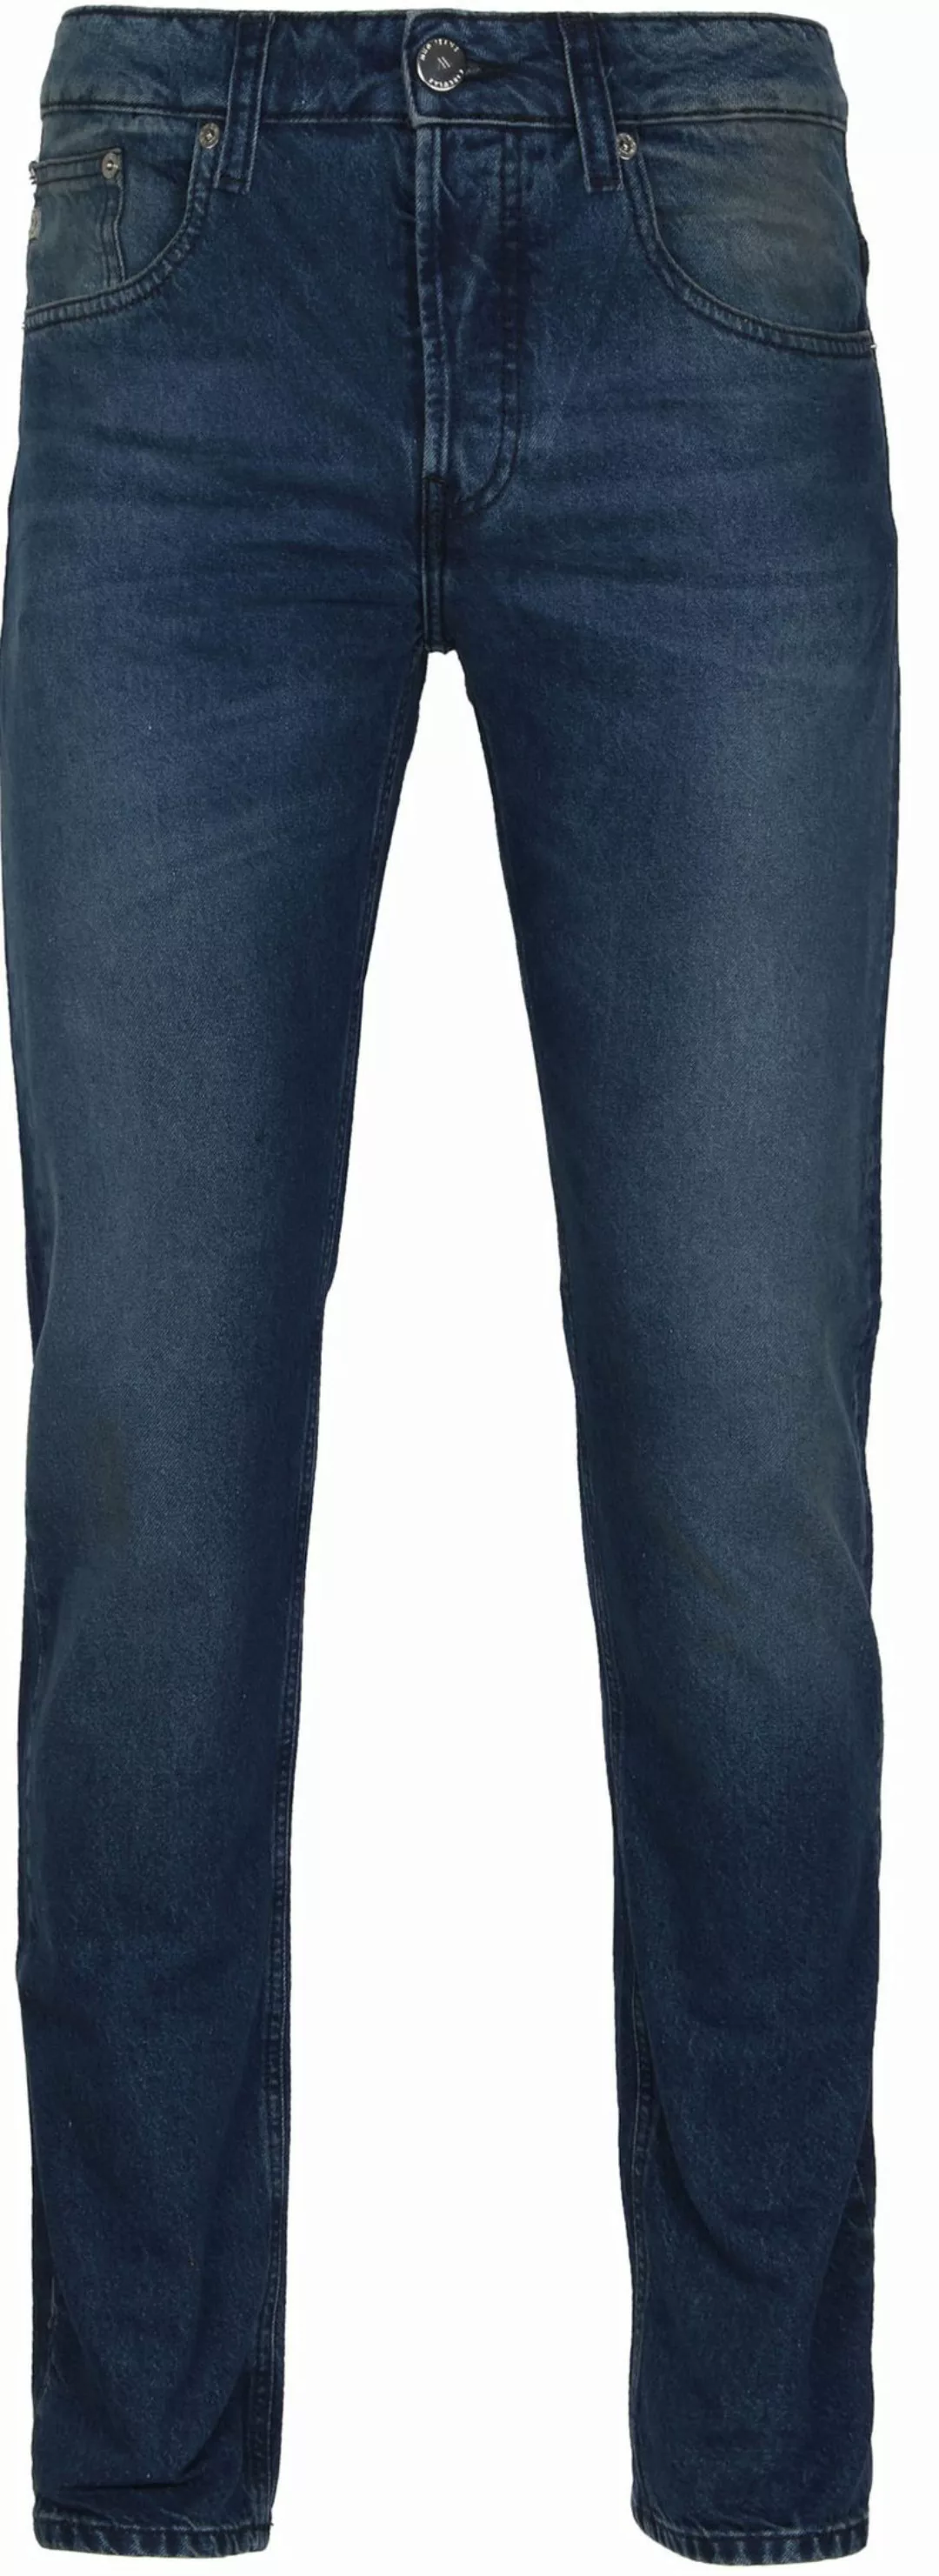 MUD Jeans Denim Regular Dunn Indigo Blau - Größe W 34 - L 36 günstig online kaufen